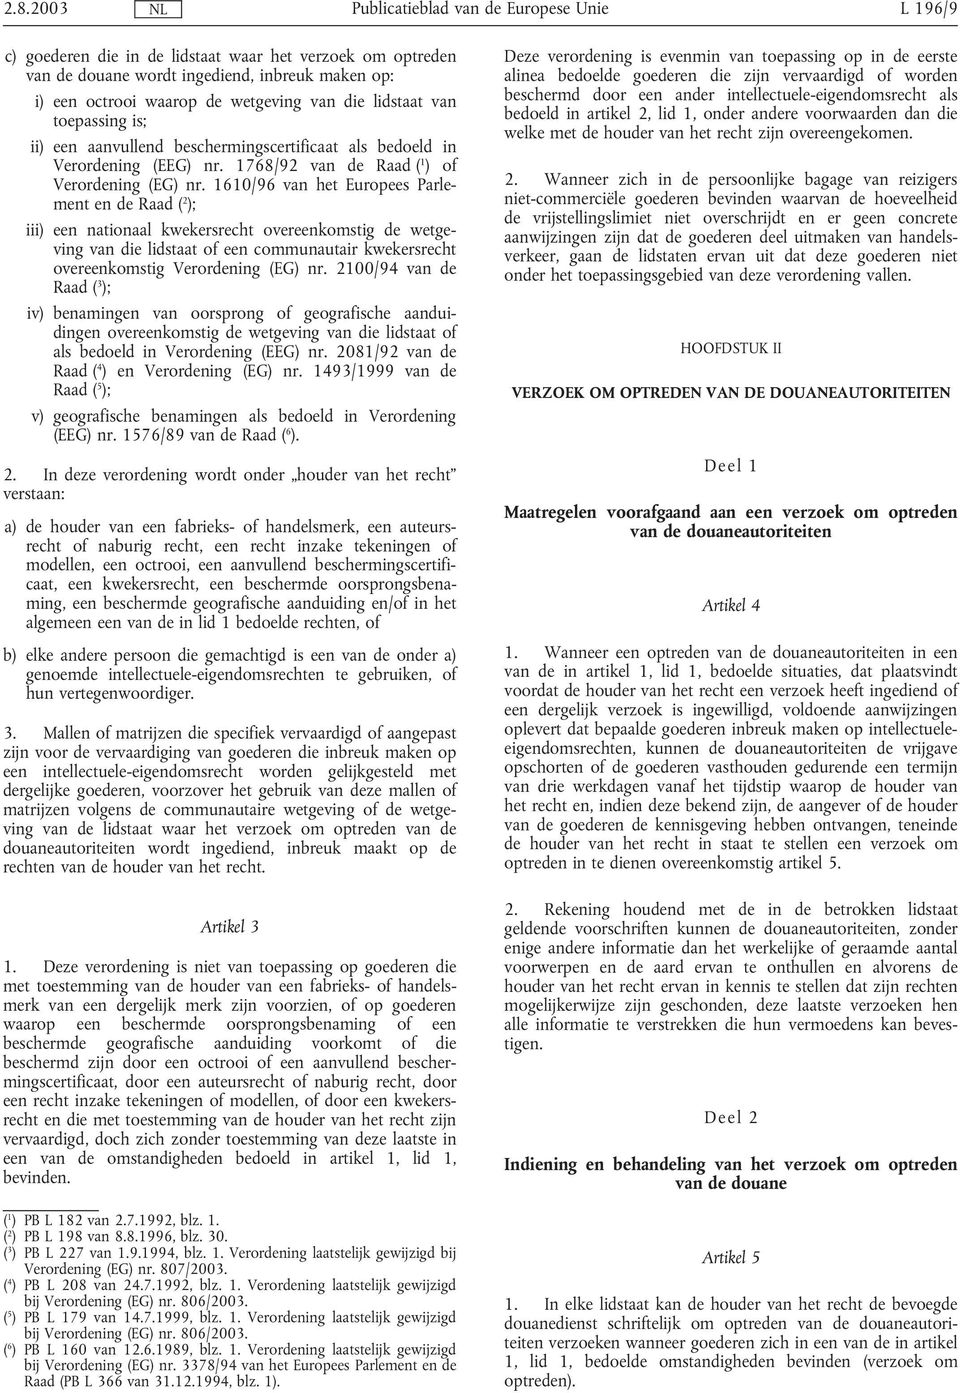 1610/96 van het Europees Parlement en de Raad ( 2 ); iii) een nationaal kwekersrecht overeenkomstig de wetgeving van die lidstaat of een communautair kwekersrecht overeenkomstig Verordening (EG) nr.